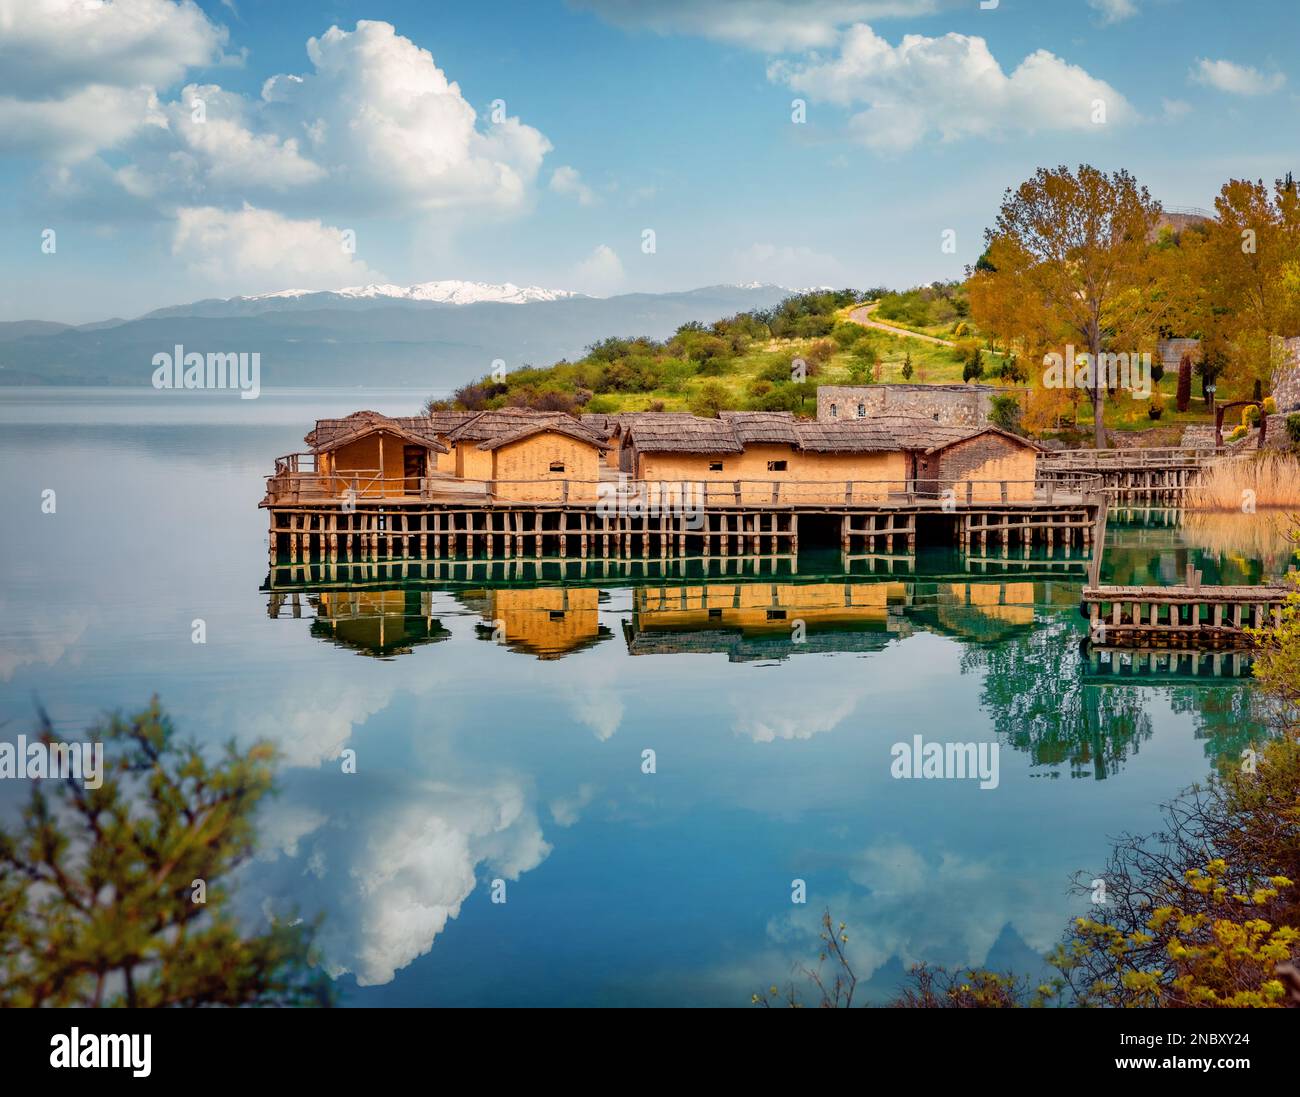 Scène matinale spectaculaire de la destination touristique populaire - la baie des os. Splendide vue sur le lac d'Ohrid. Paysage incroyable de la Macédoine du Nord, EUR Banque D'Images